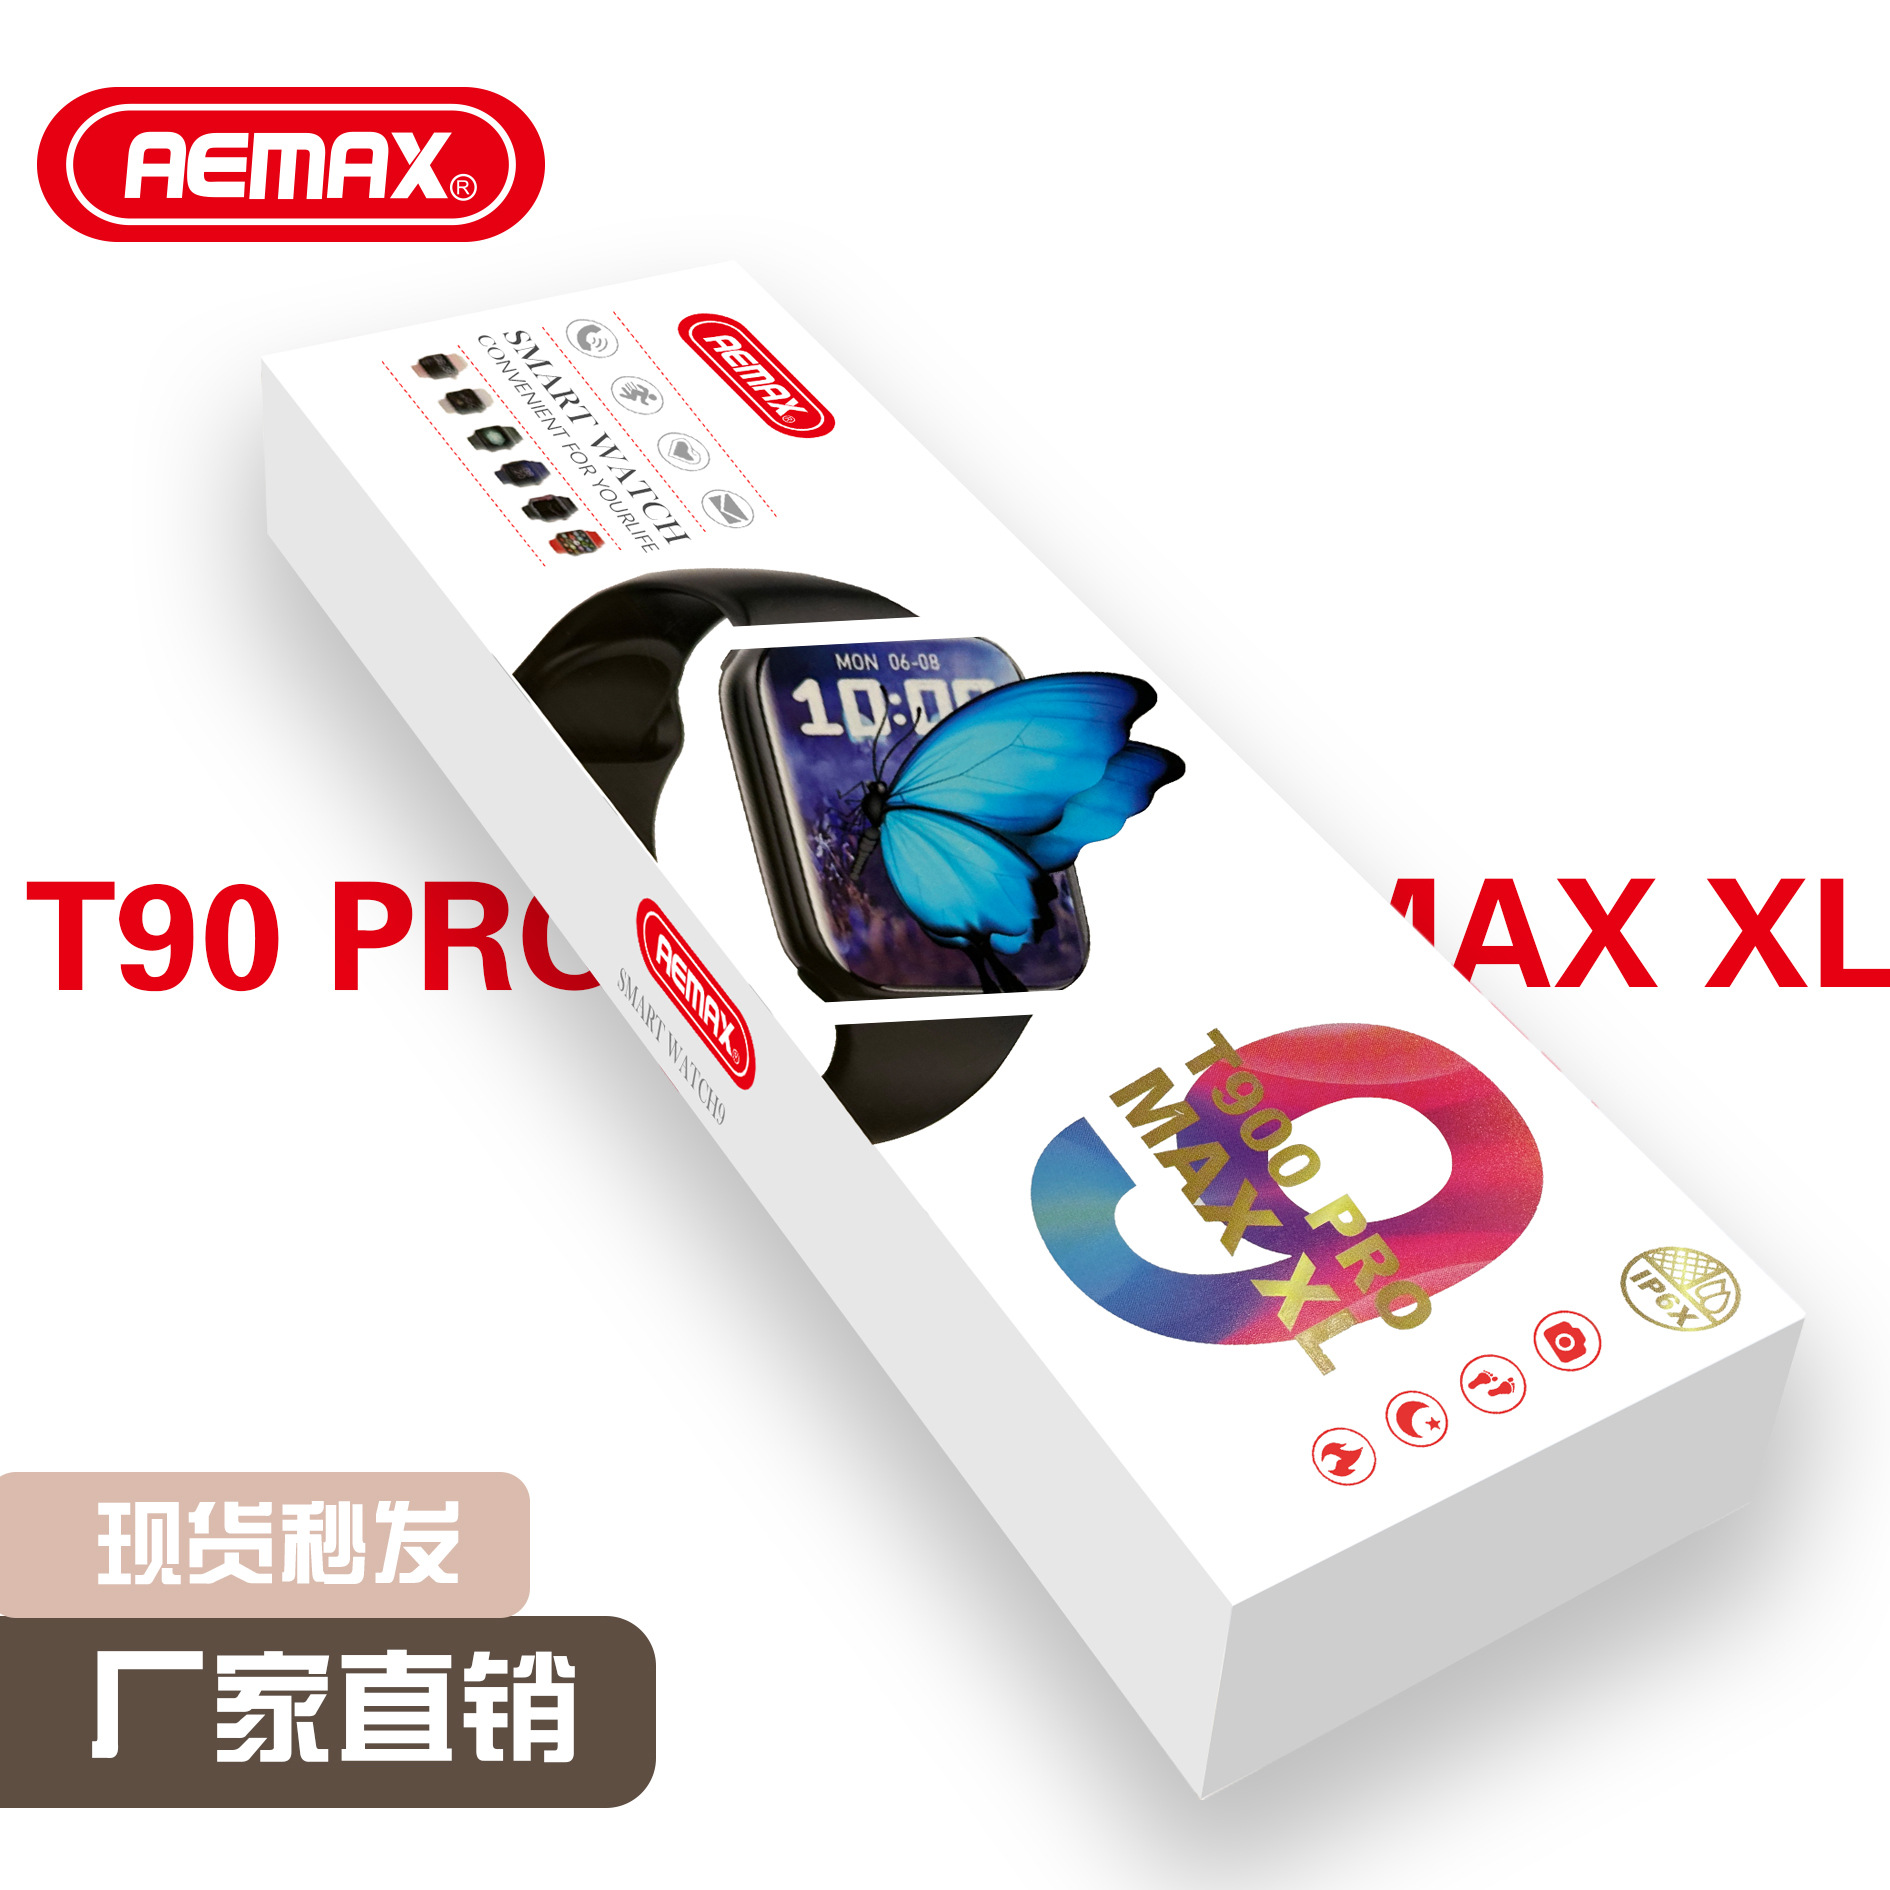 新款T900 PRO MAX XL智能手表蓝牙通话体温心率血压血氧计步检测图